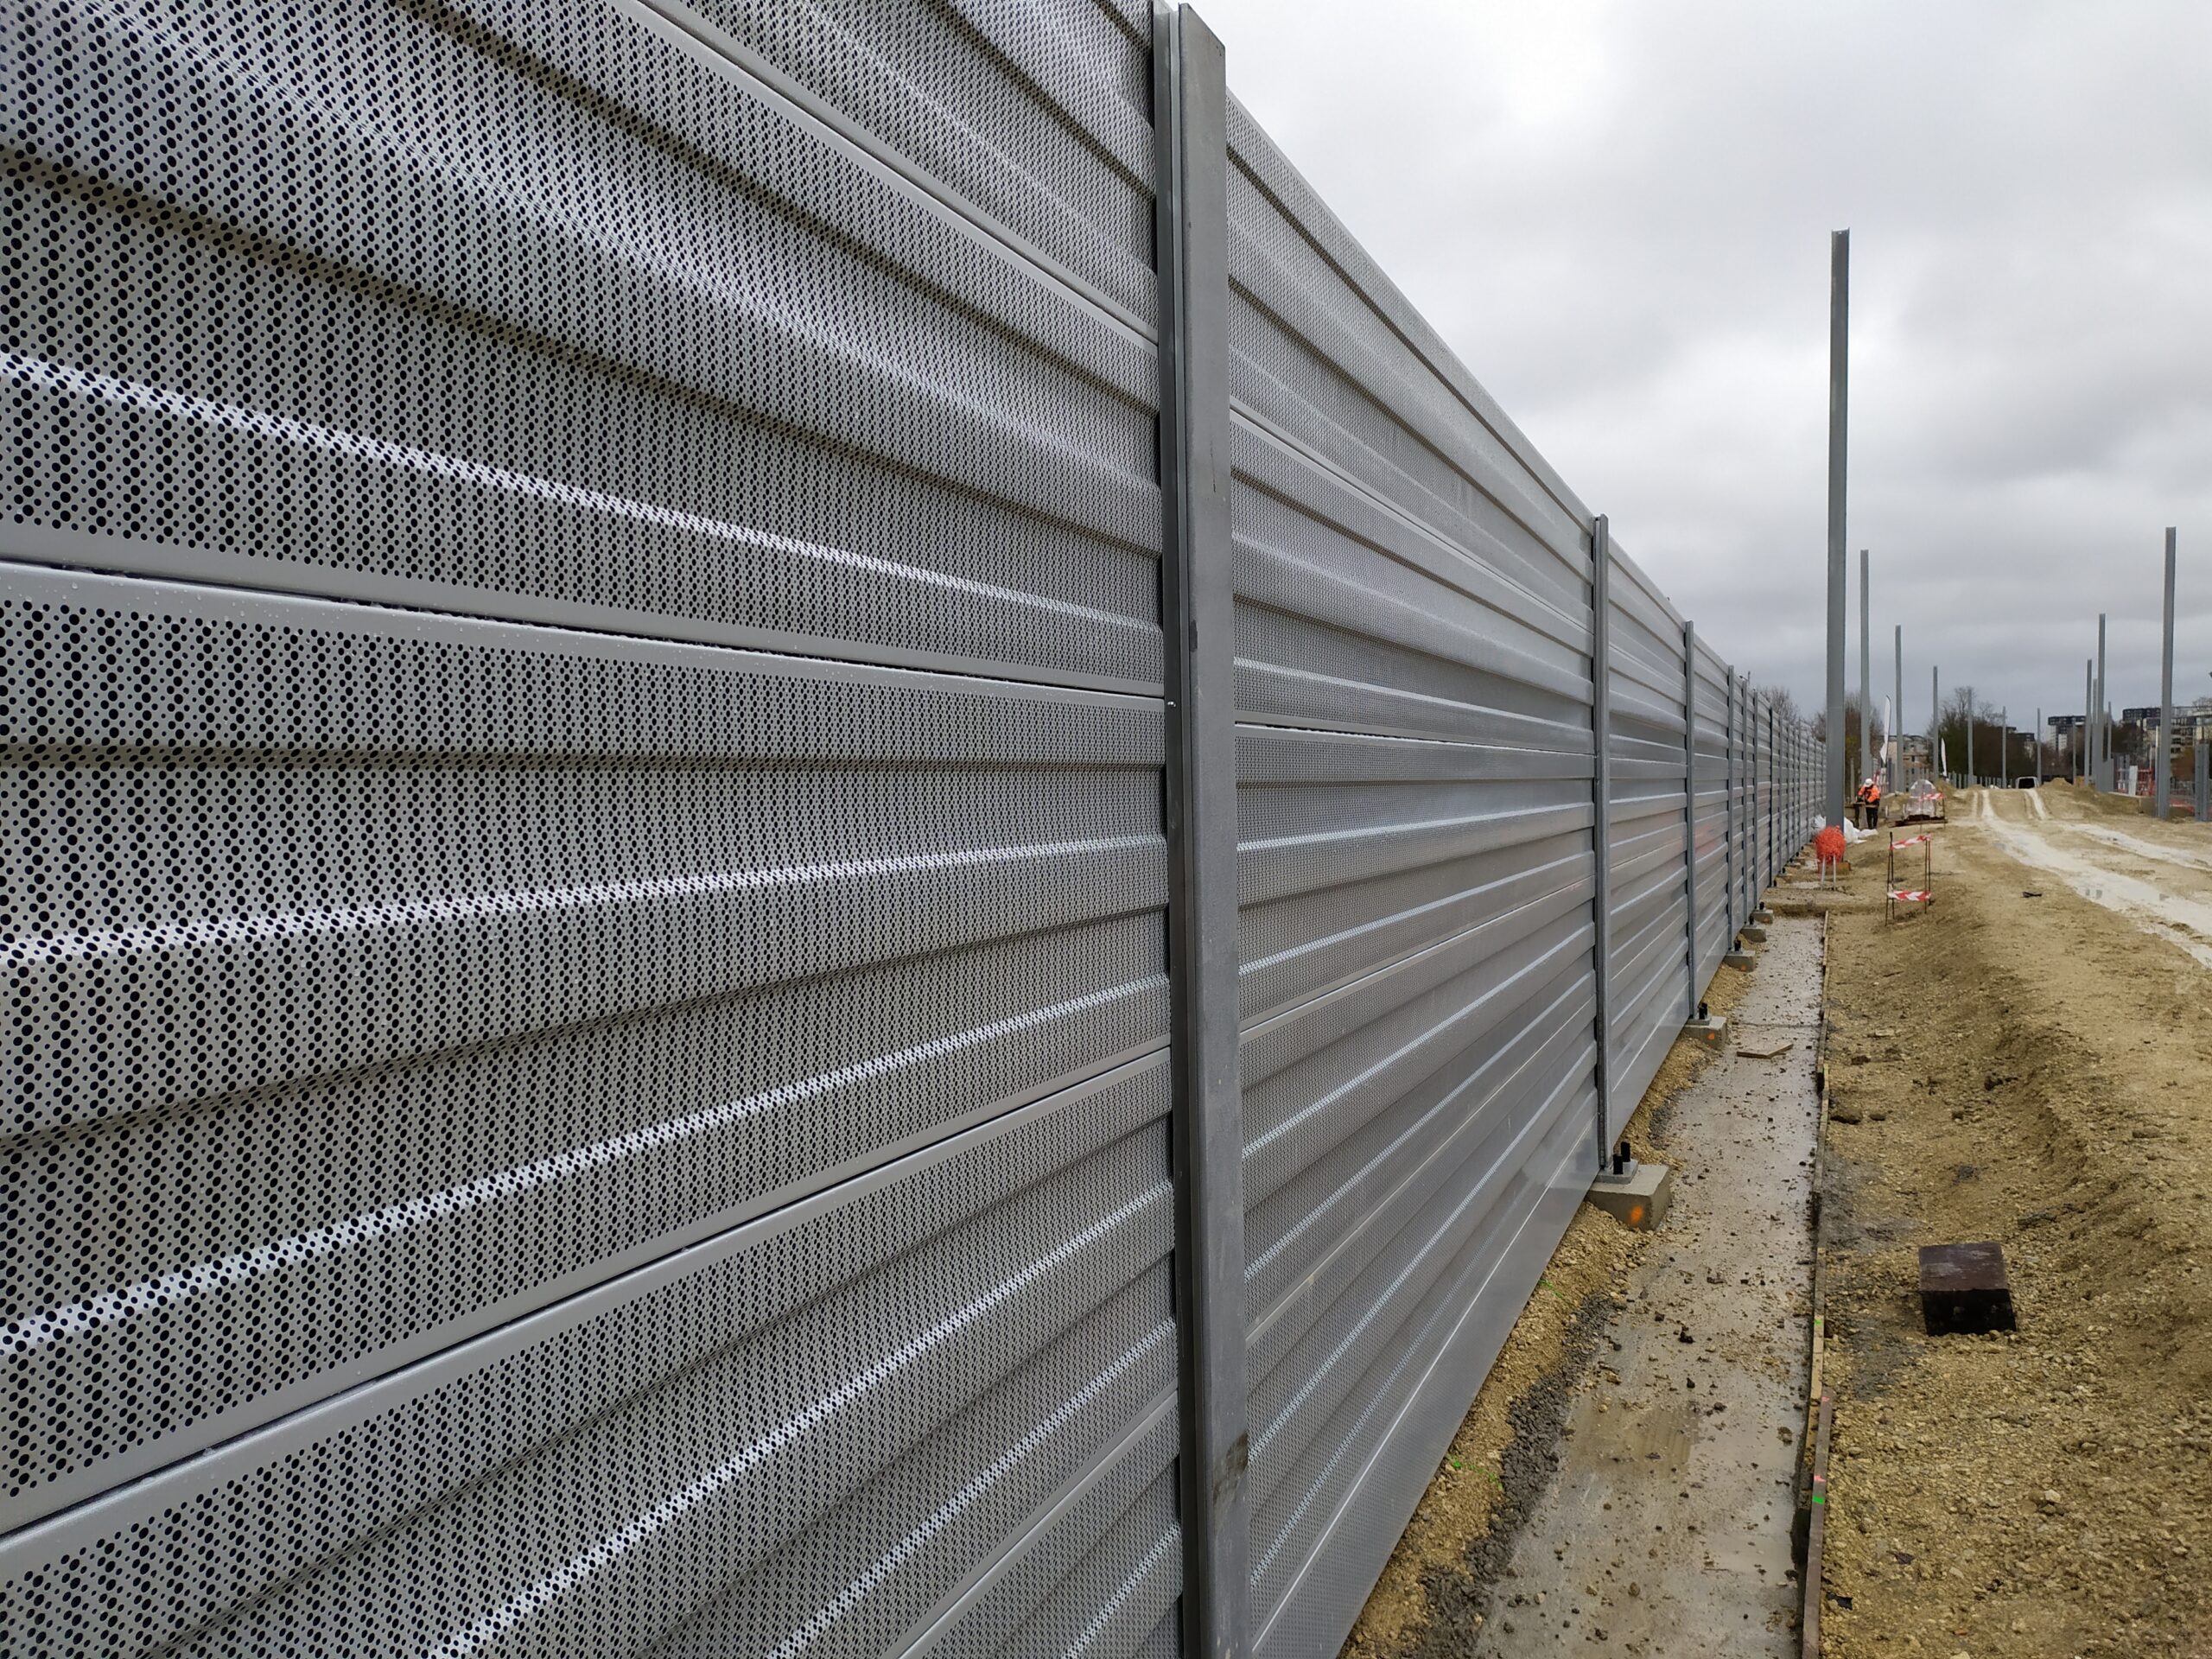 Les clôtures pour votre mur anti-bruit